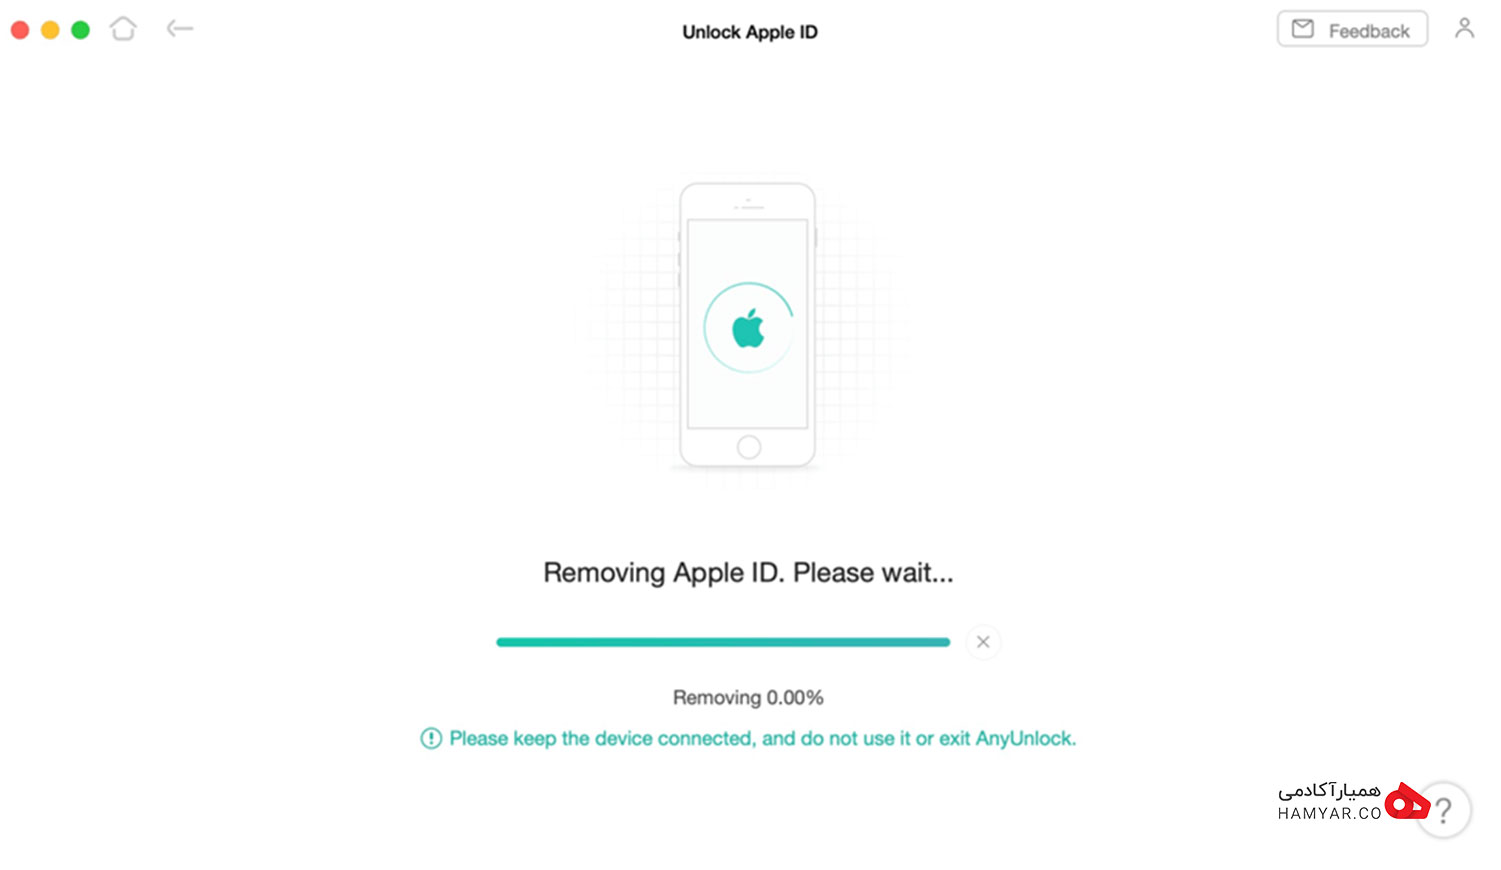 تغییر رمز اپل آیدی برون سوال امنیتی با اپلیکیشن AnyUnlock